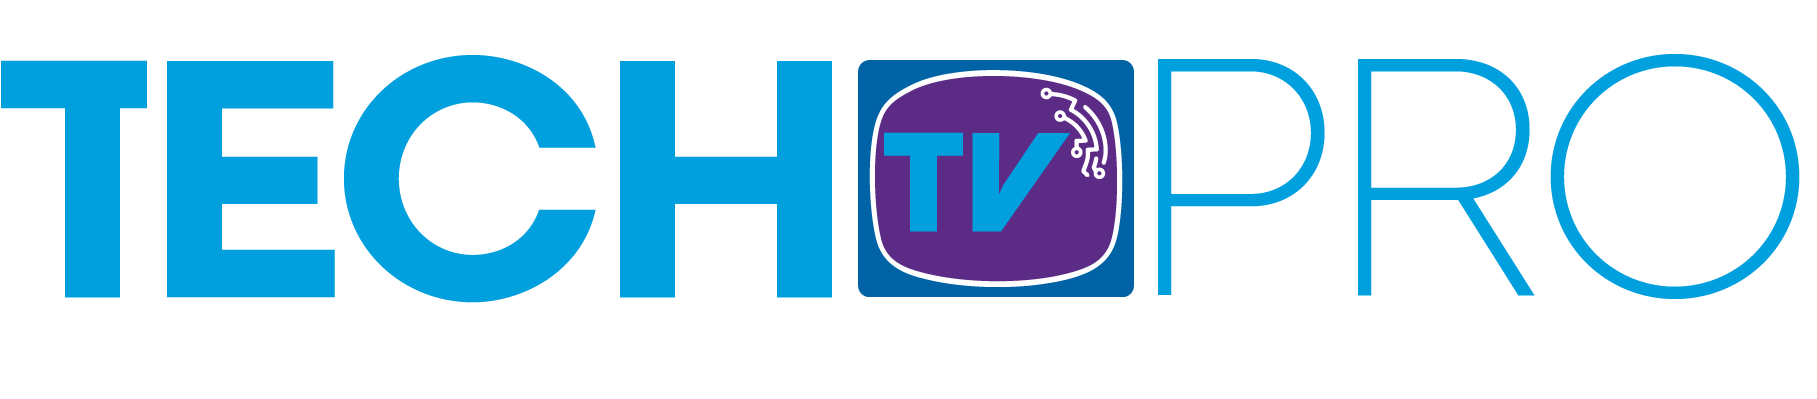 Tech TV Pro logo